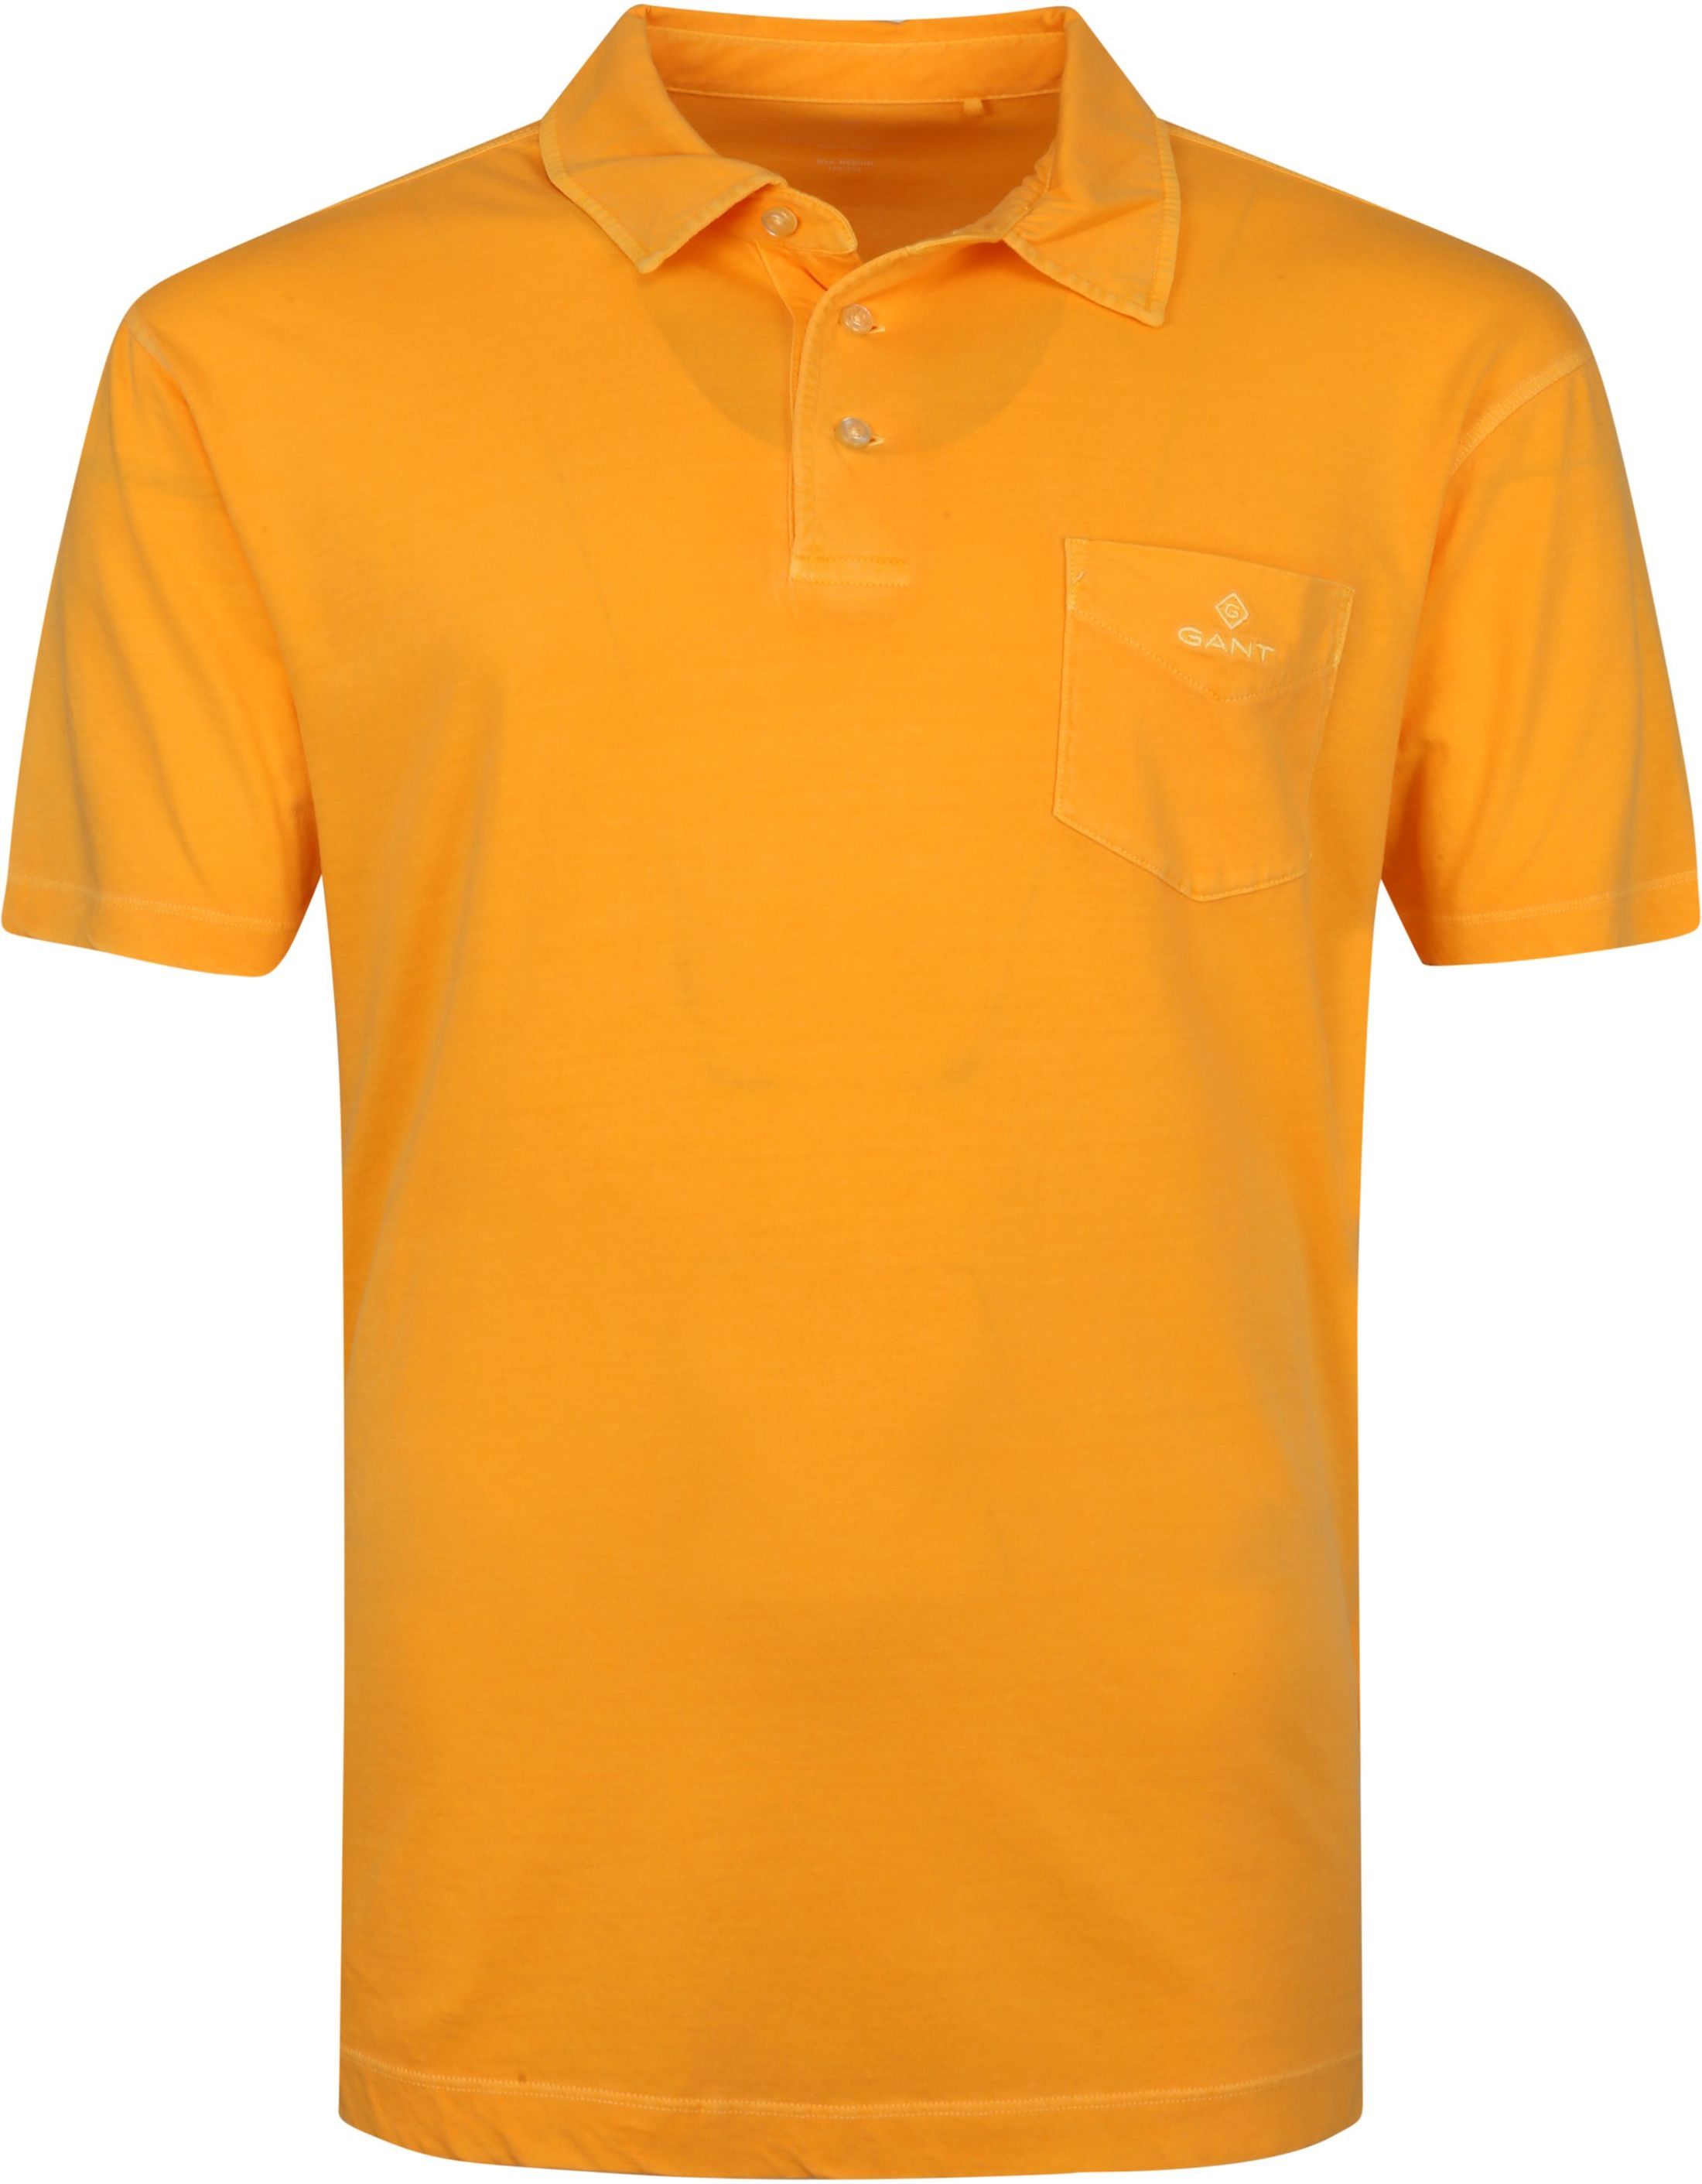 Gant Sunfaded Jersey Polo Orange size 3XL